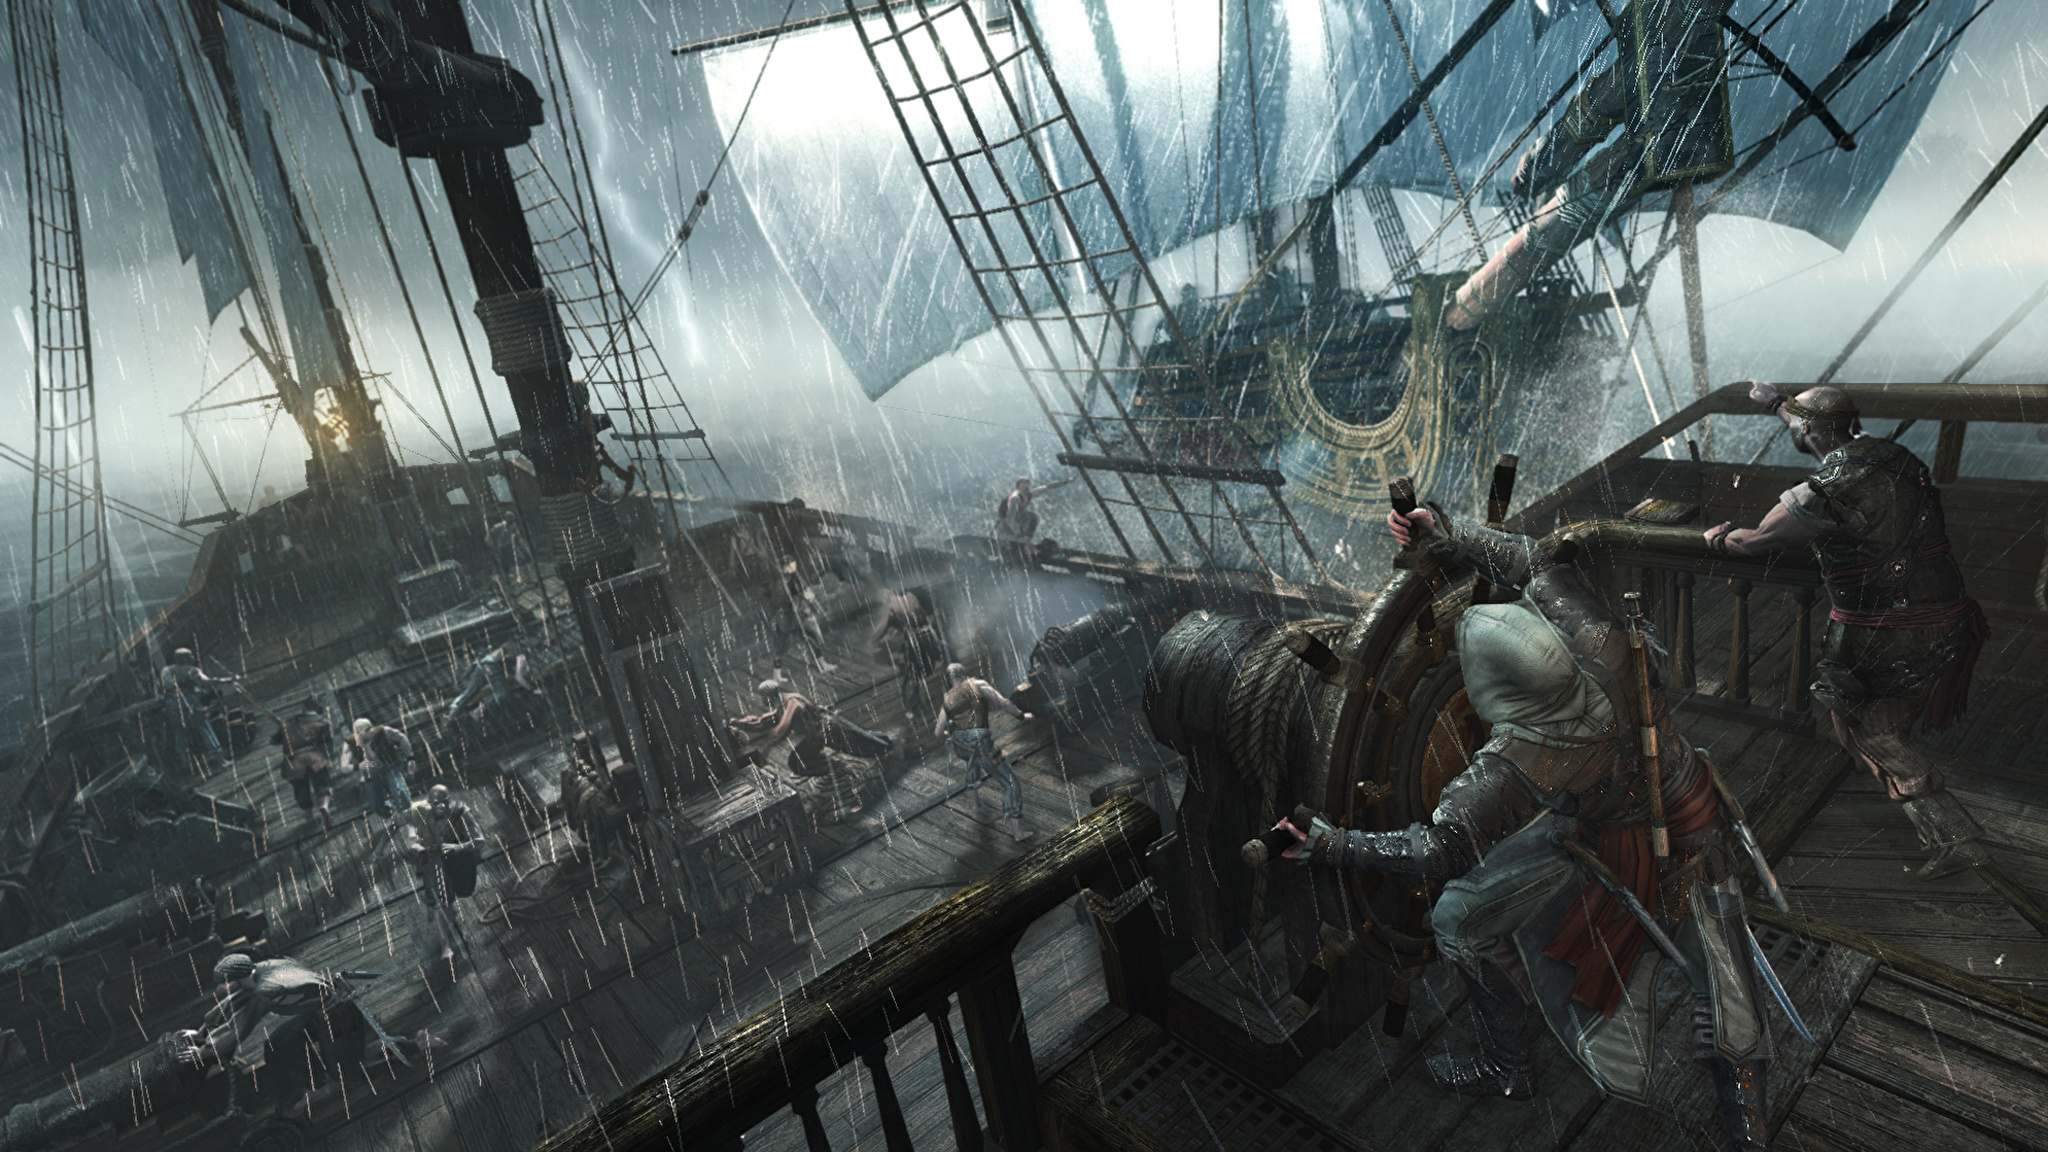 Assasın creed 4. Assassin's Creed 4 Black Flag. Летучий голландец ассасин Крид 4. Корабль призрак ассасин Крид 4.